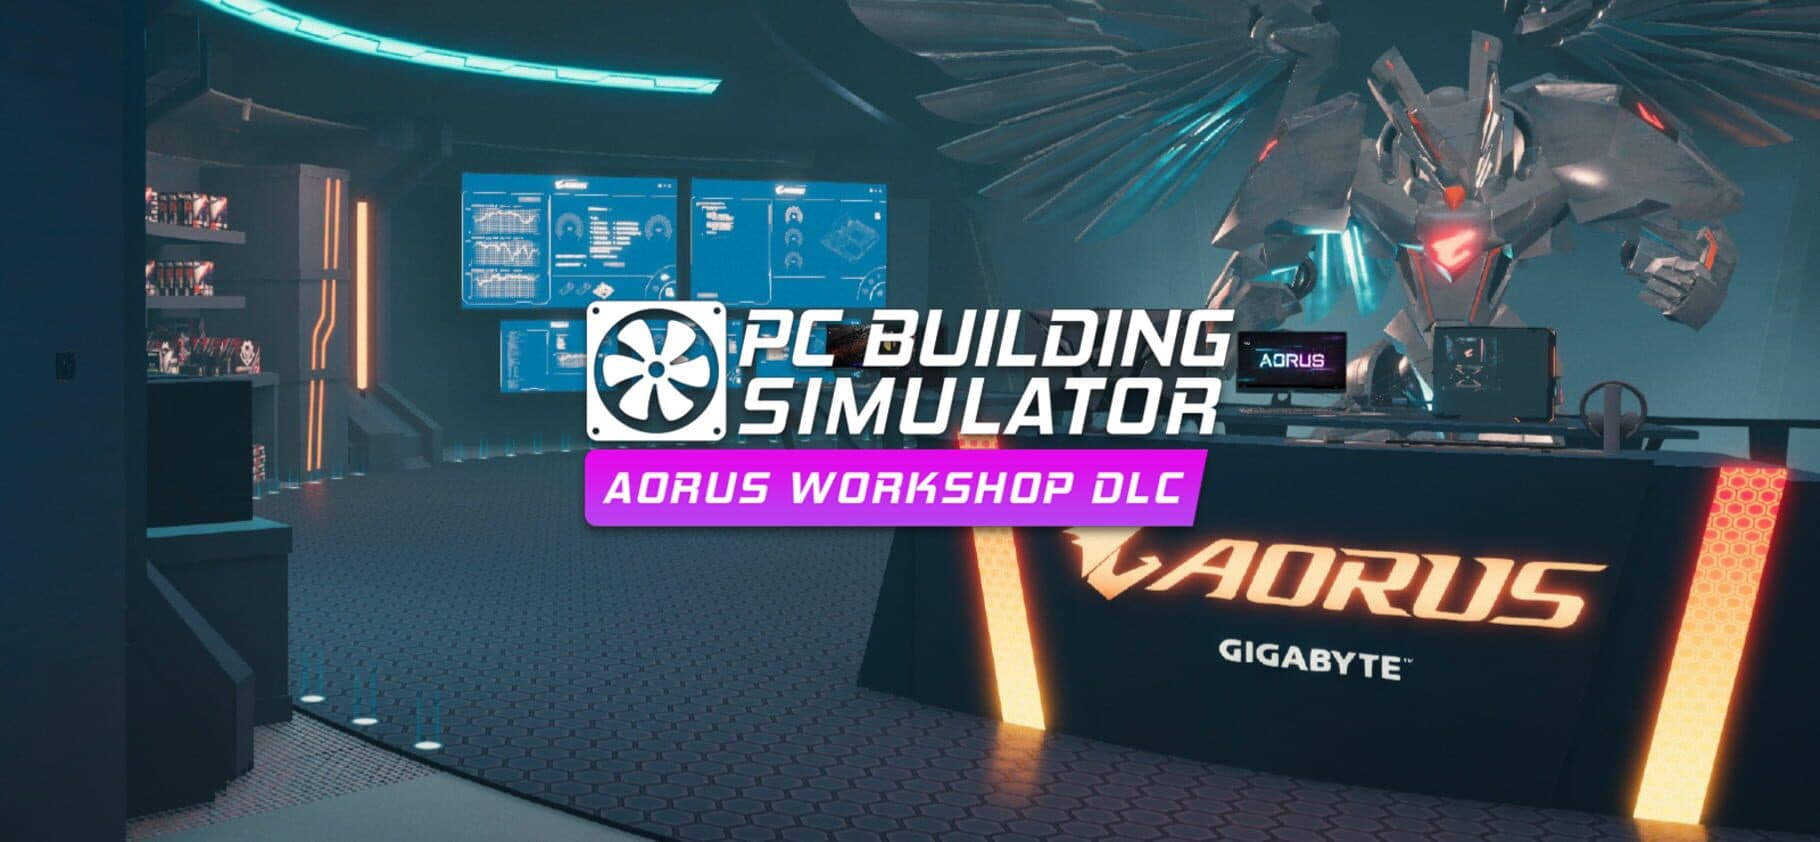 PC Building Simulator: Aorus Workshop Image